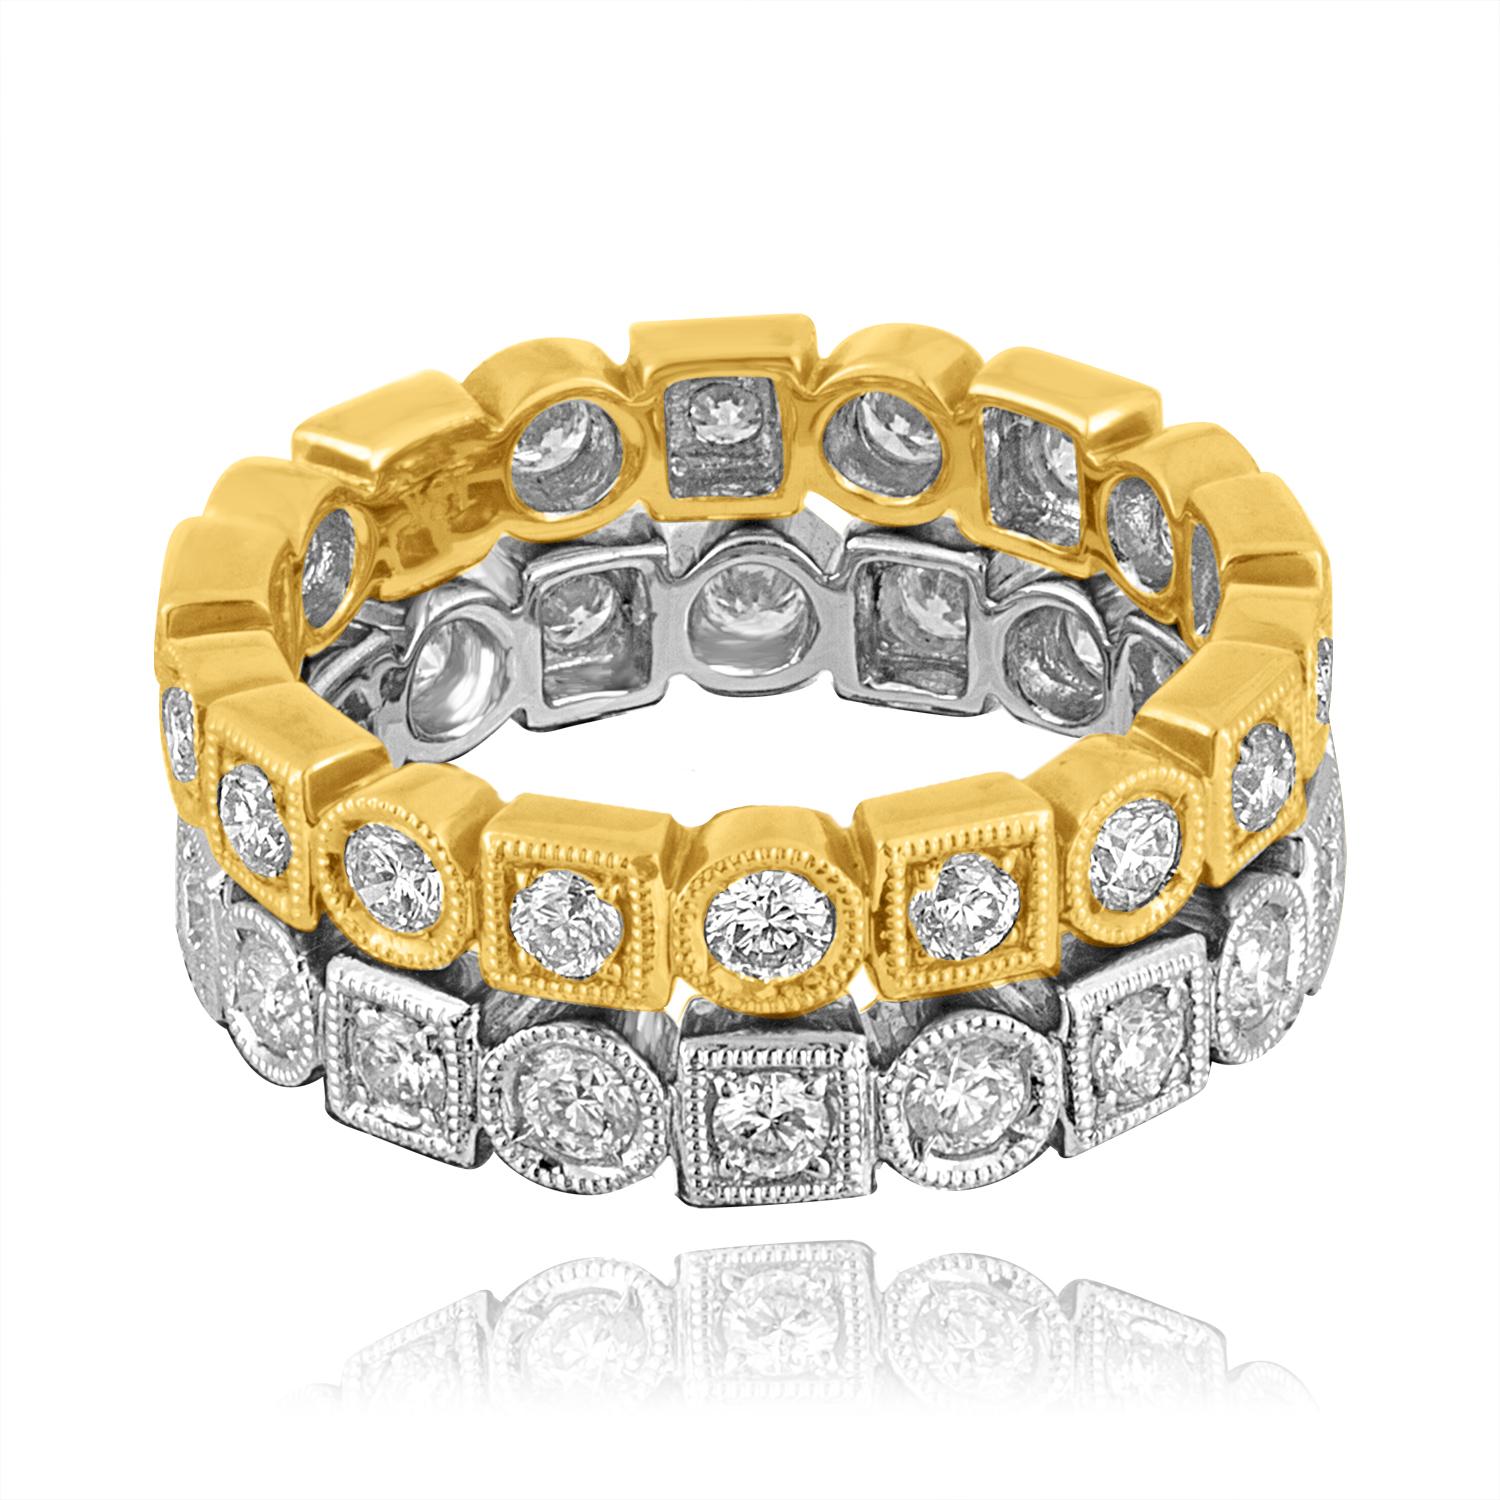 Schöne & stilvolle stapelbare Ringe
Das Set besteht aus 2 Ringen.
Die Ringe sind aus 18K Gelb- und Weißgold
18KY 0,90 Karat F/G VS/SI Diamanten 4,7 Gramm Größe 6,50
18KW 1.00 Karat F/G VS/SI Diamanten 3.9 Gramm Größe 7.00
Die Größen sind aus Gründen